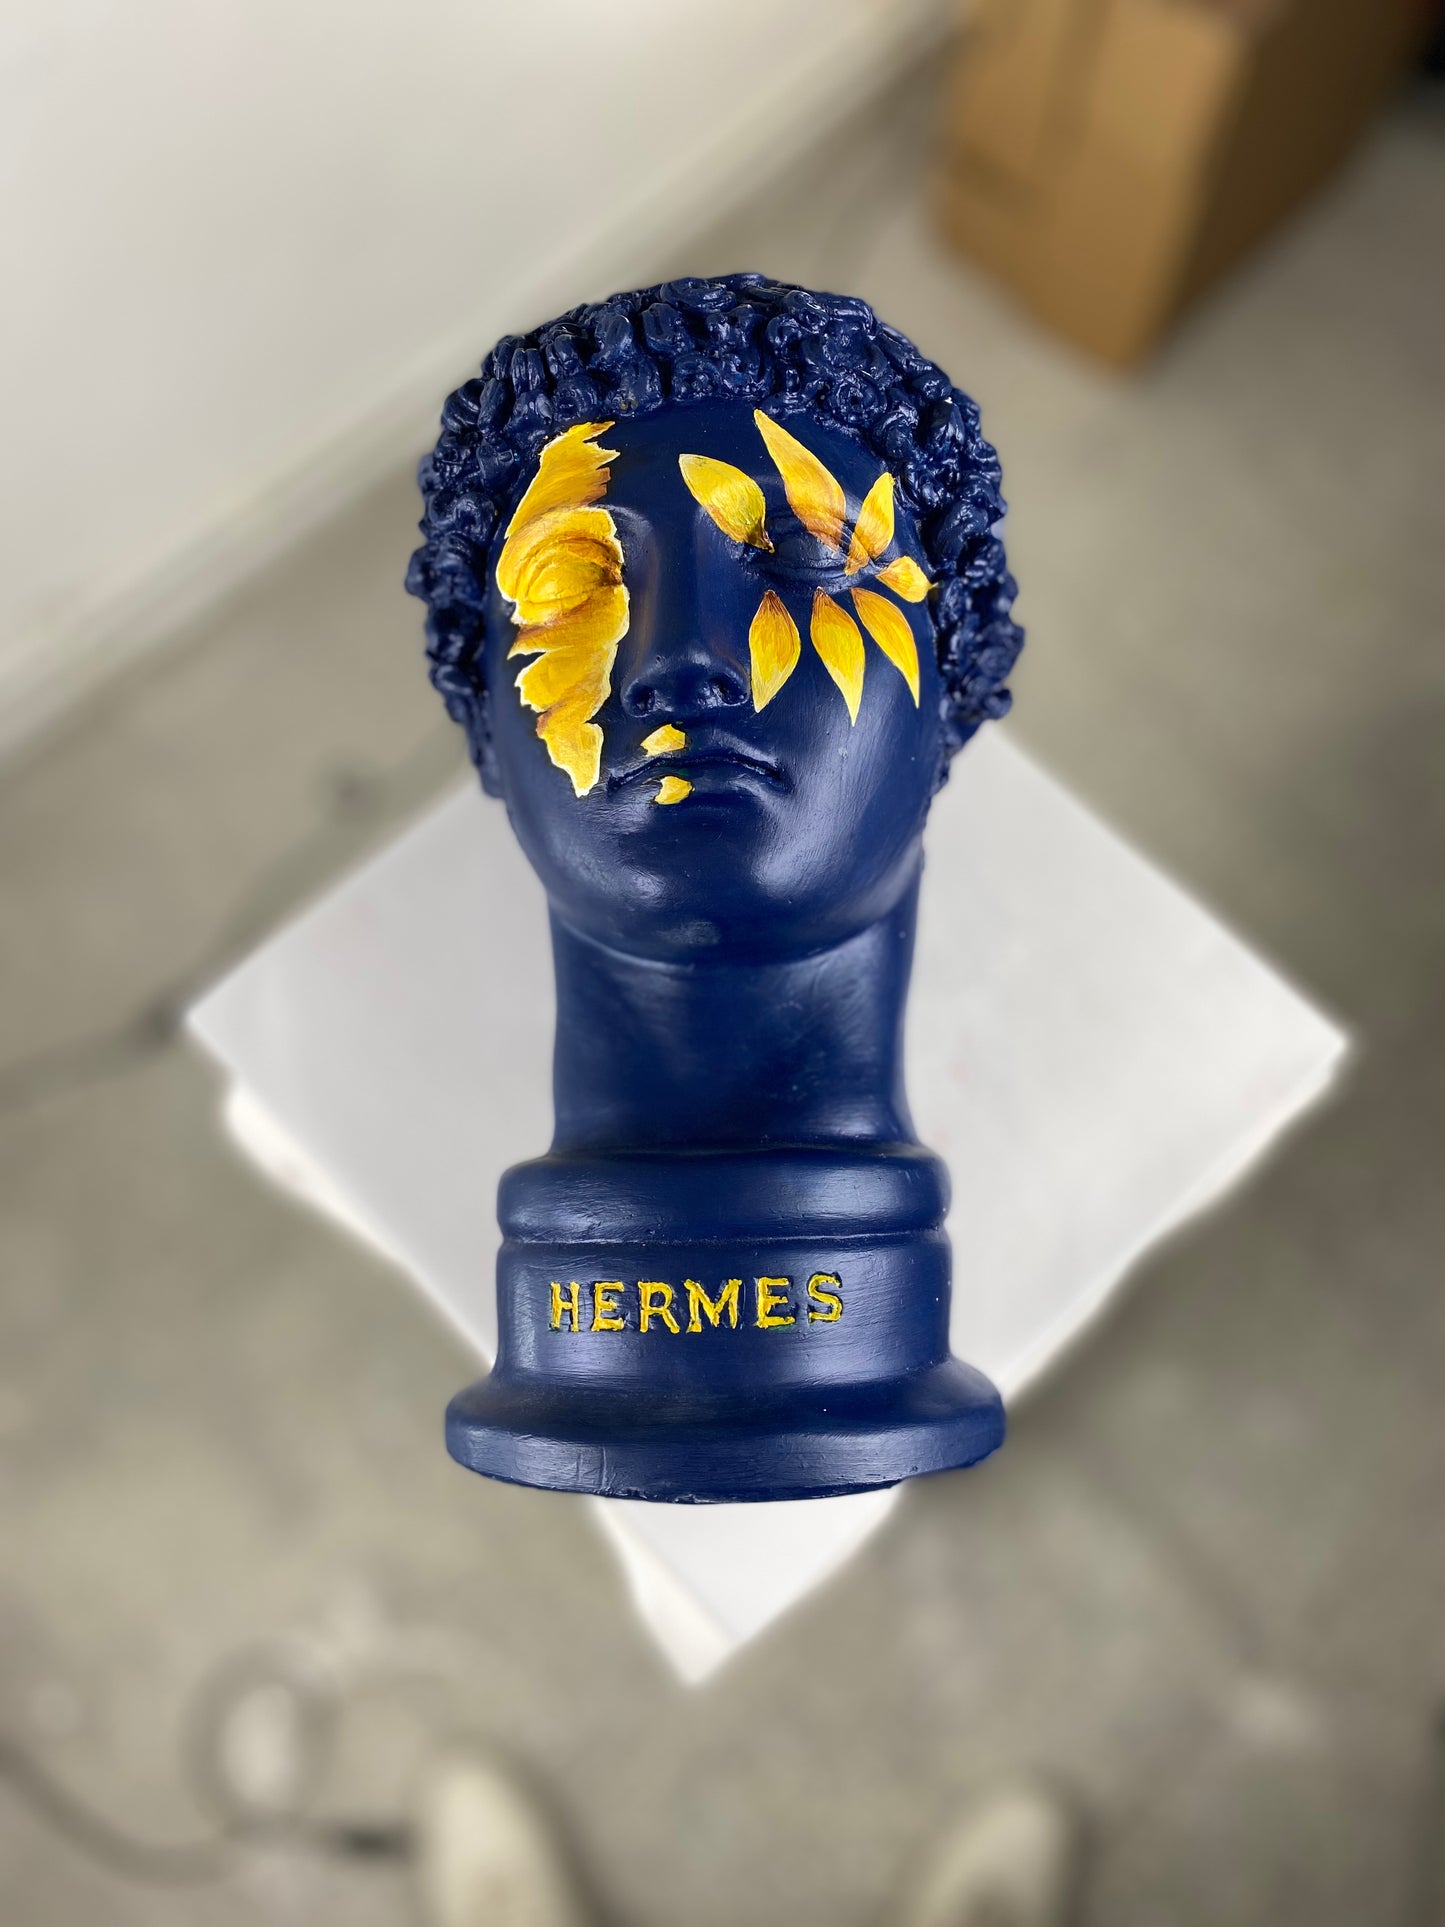 Hermes 'Sunflower' Pop Art Sculpture, Modern Home Decor